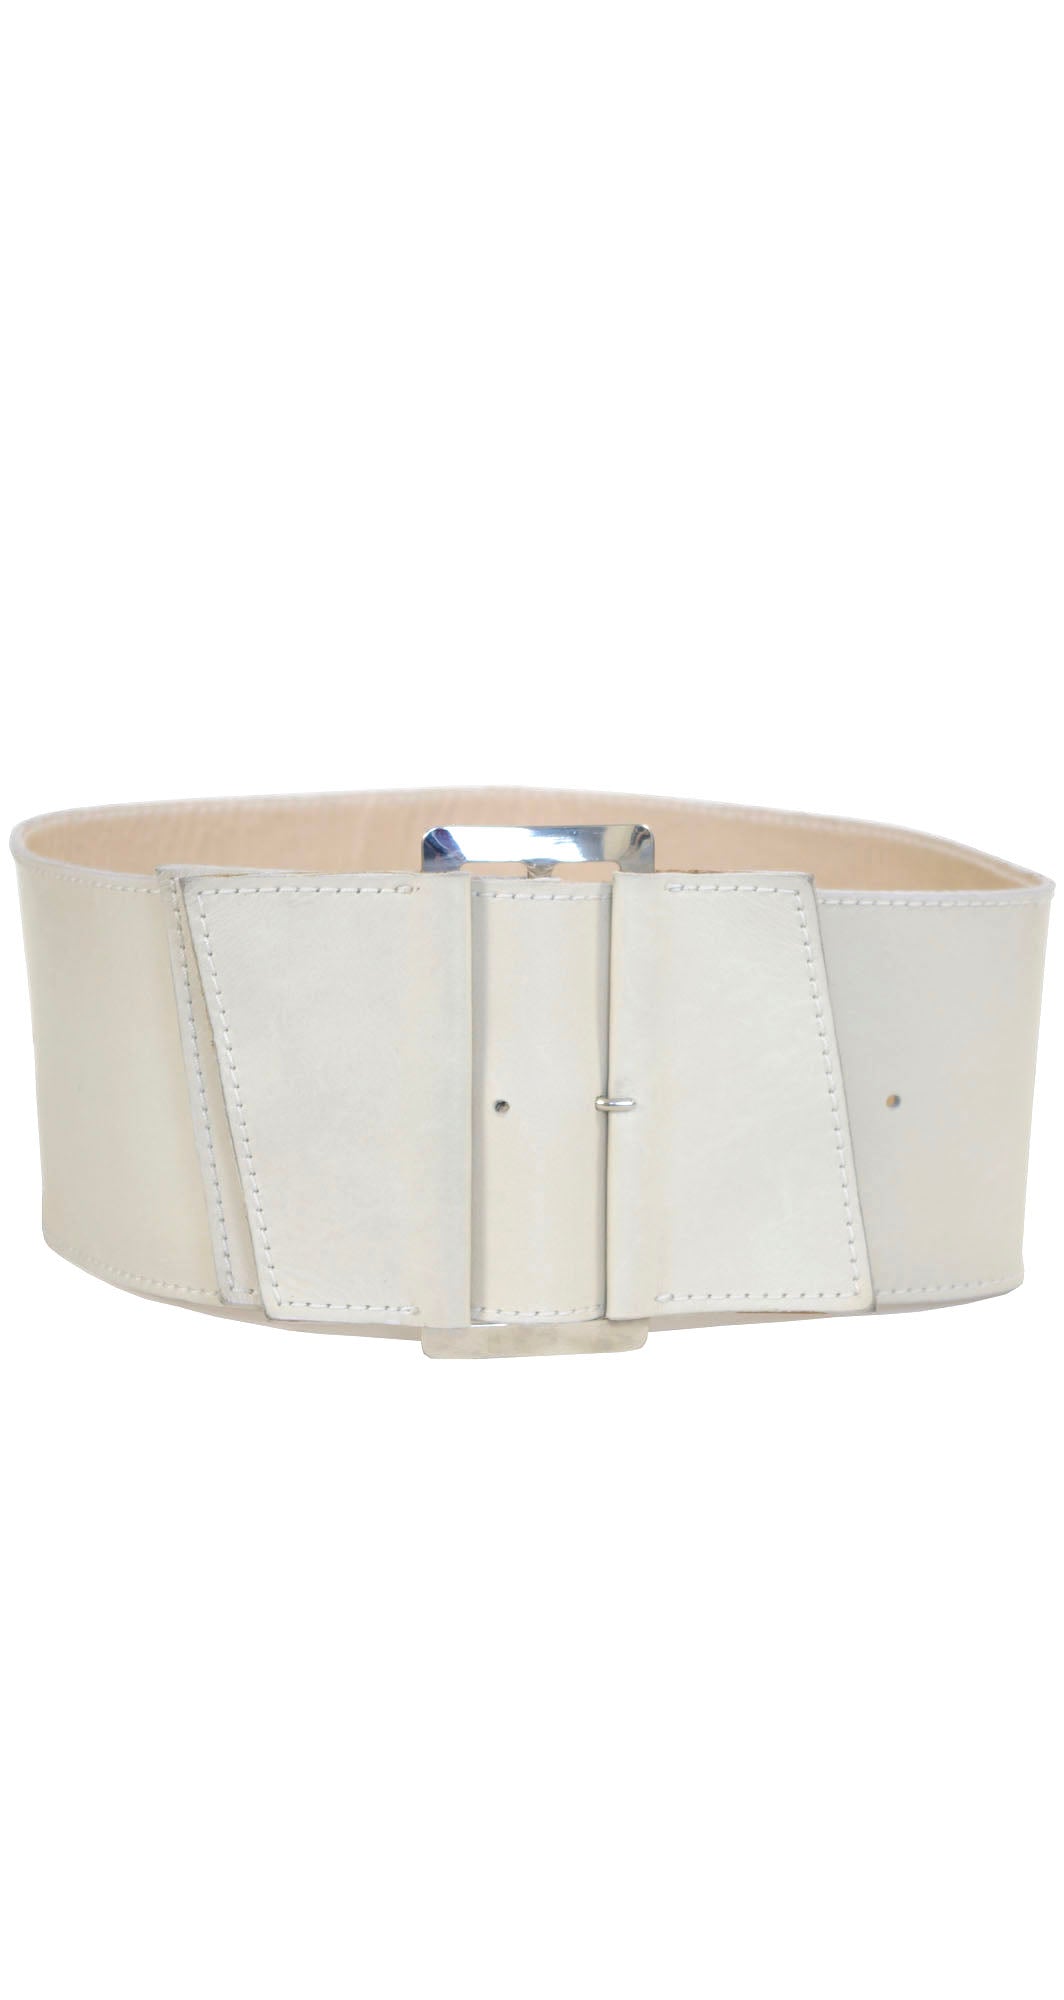 1980s Asymmetrical Wide Leather Waist Belt